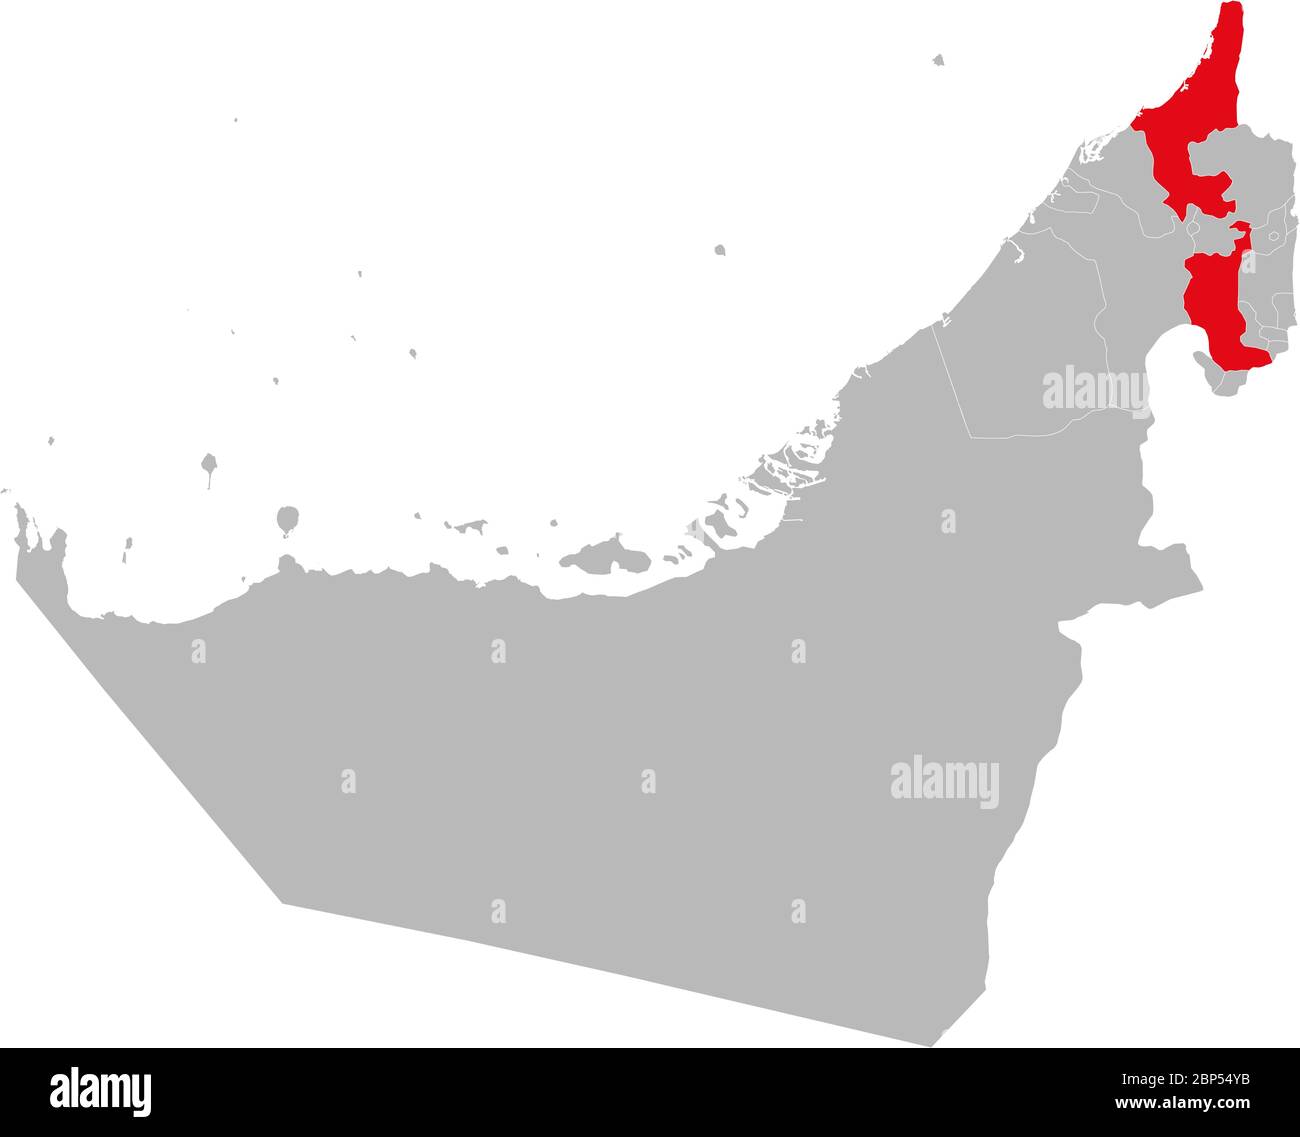 Stato RAS al-Khaimah evidenziato sulla mappa degli Emirati Arabi Uniti. Concetti e background aziendali. Illustrazione Vettoriale